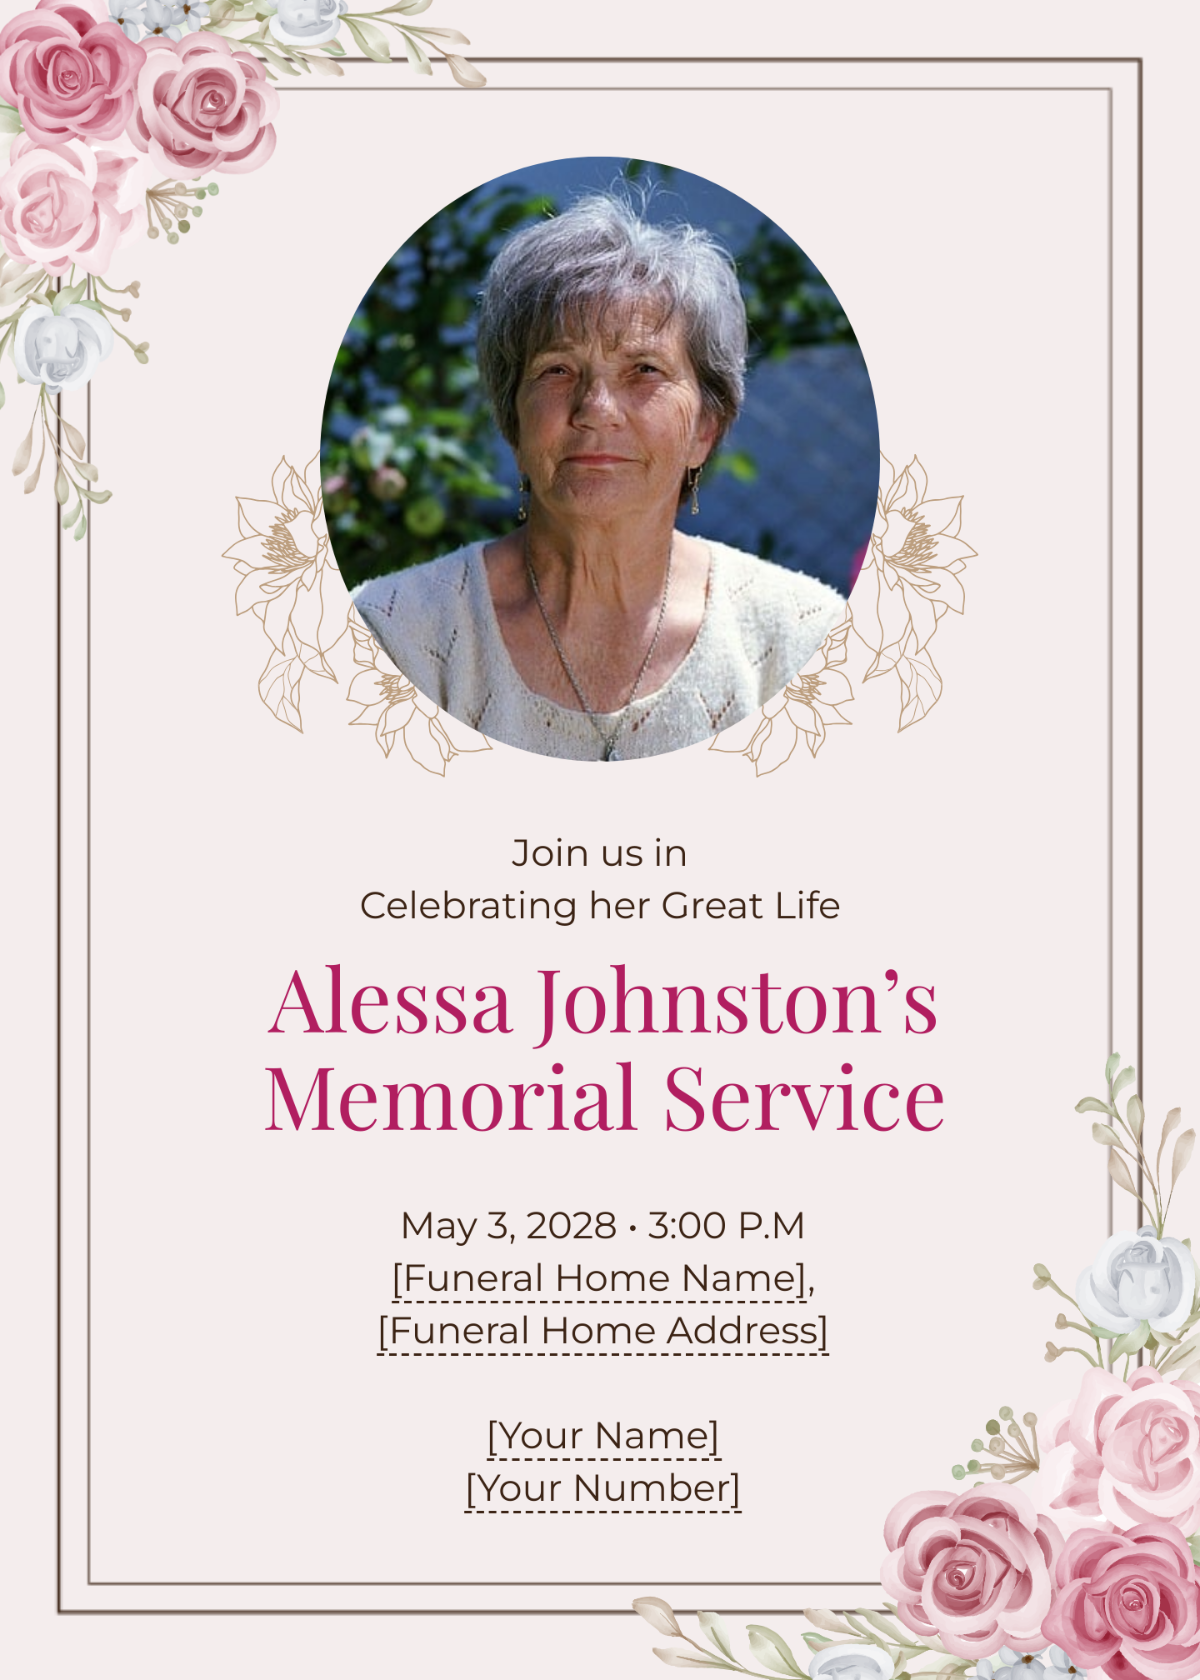 Memorial Service Invitation Template